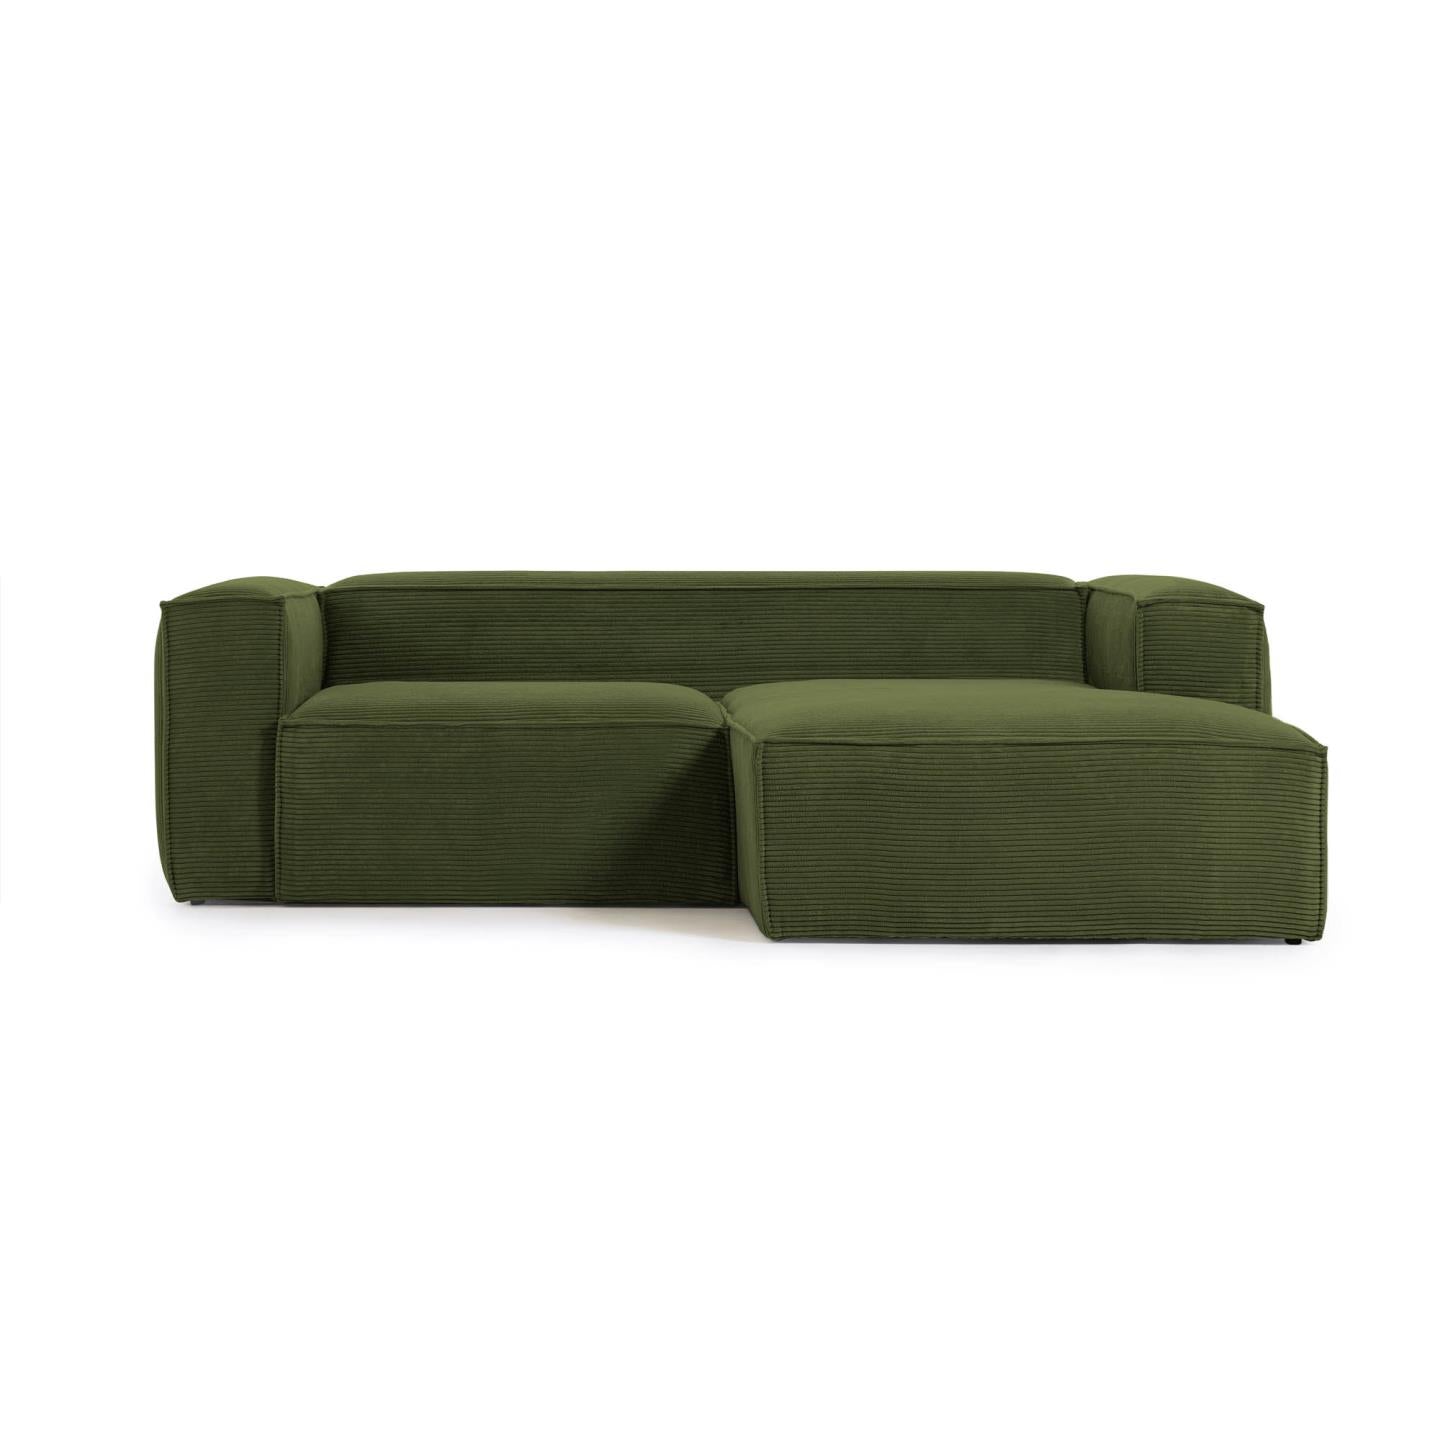 Blok 2 személyes kanapé jobb oldali fekvőfotellel, zöld, széles varrású kordbársonyból, 240 cm